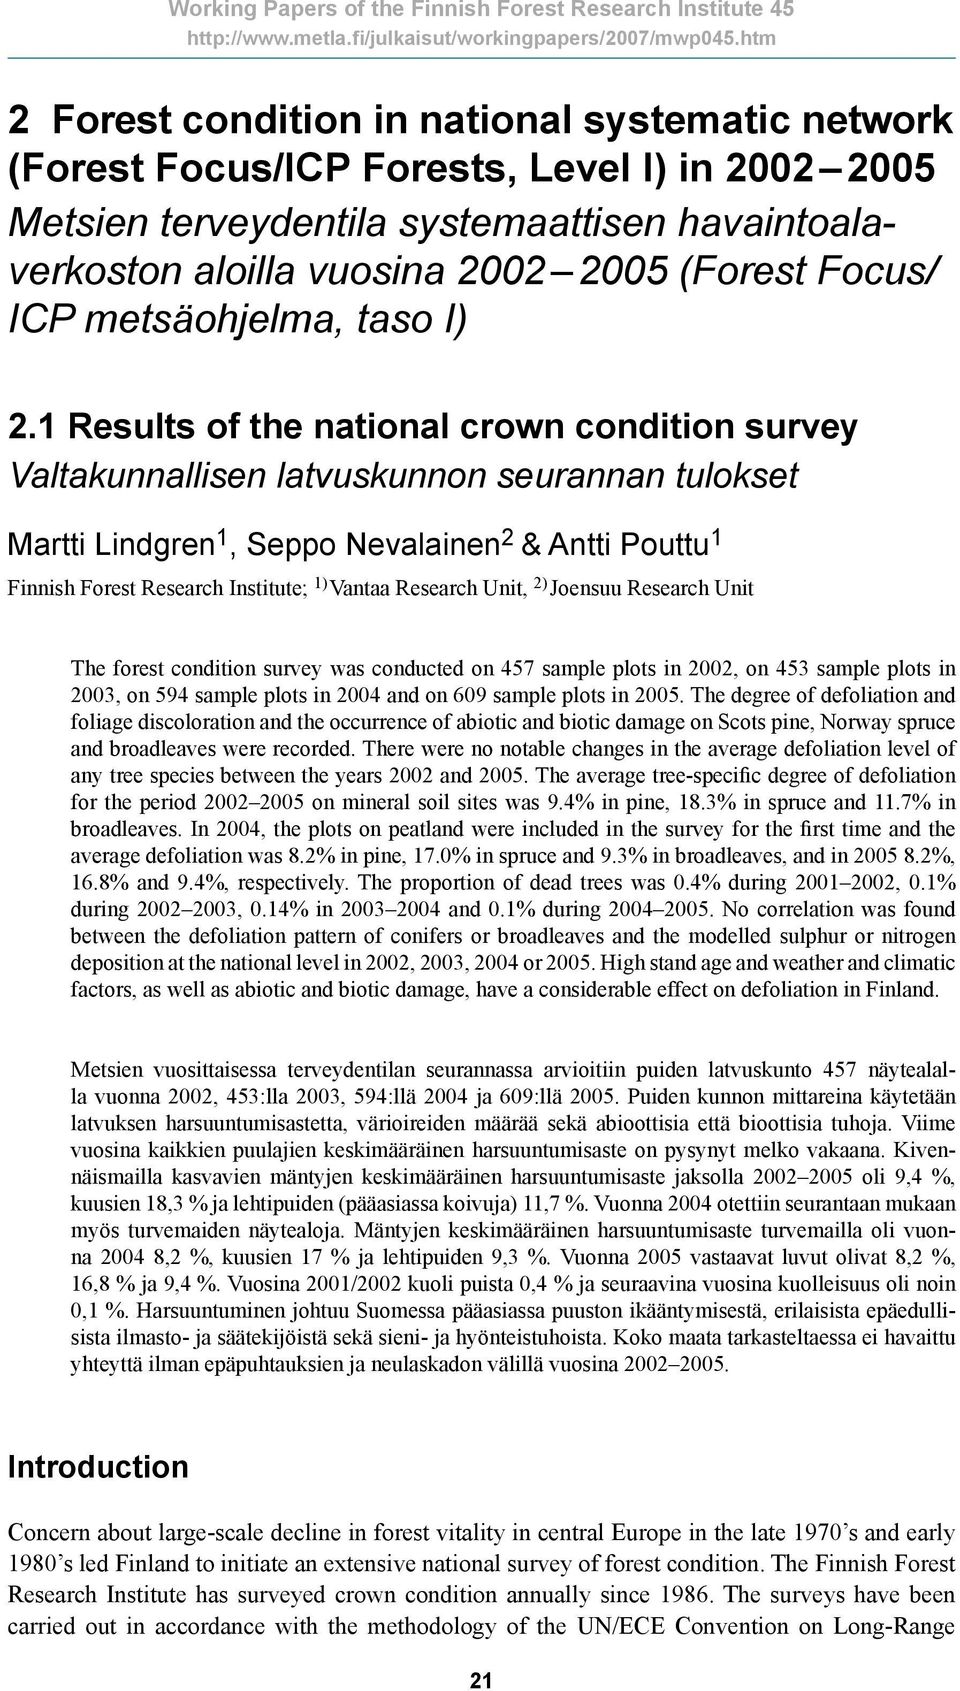 1 Results of the national crown condition survey Valtakunnallisen latvuskunnon seurannan tulokset Martti Lindgren 1, Seppo Nevalainen 2 & Antti Pouttu 1 Finnish Forest Research Institute; 1) Vantaa